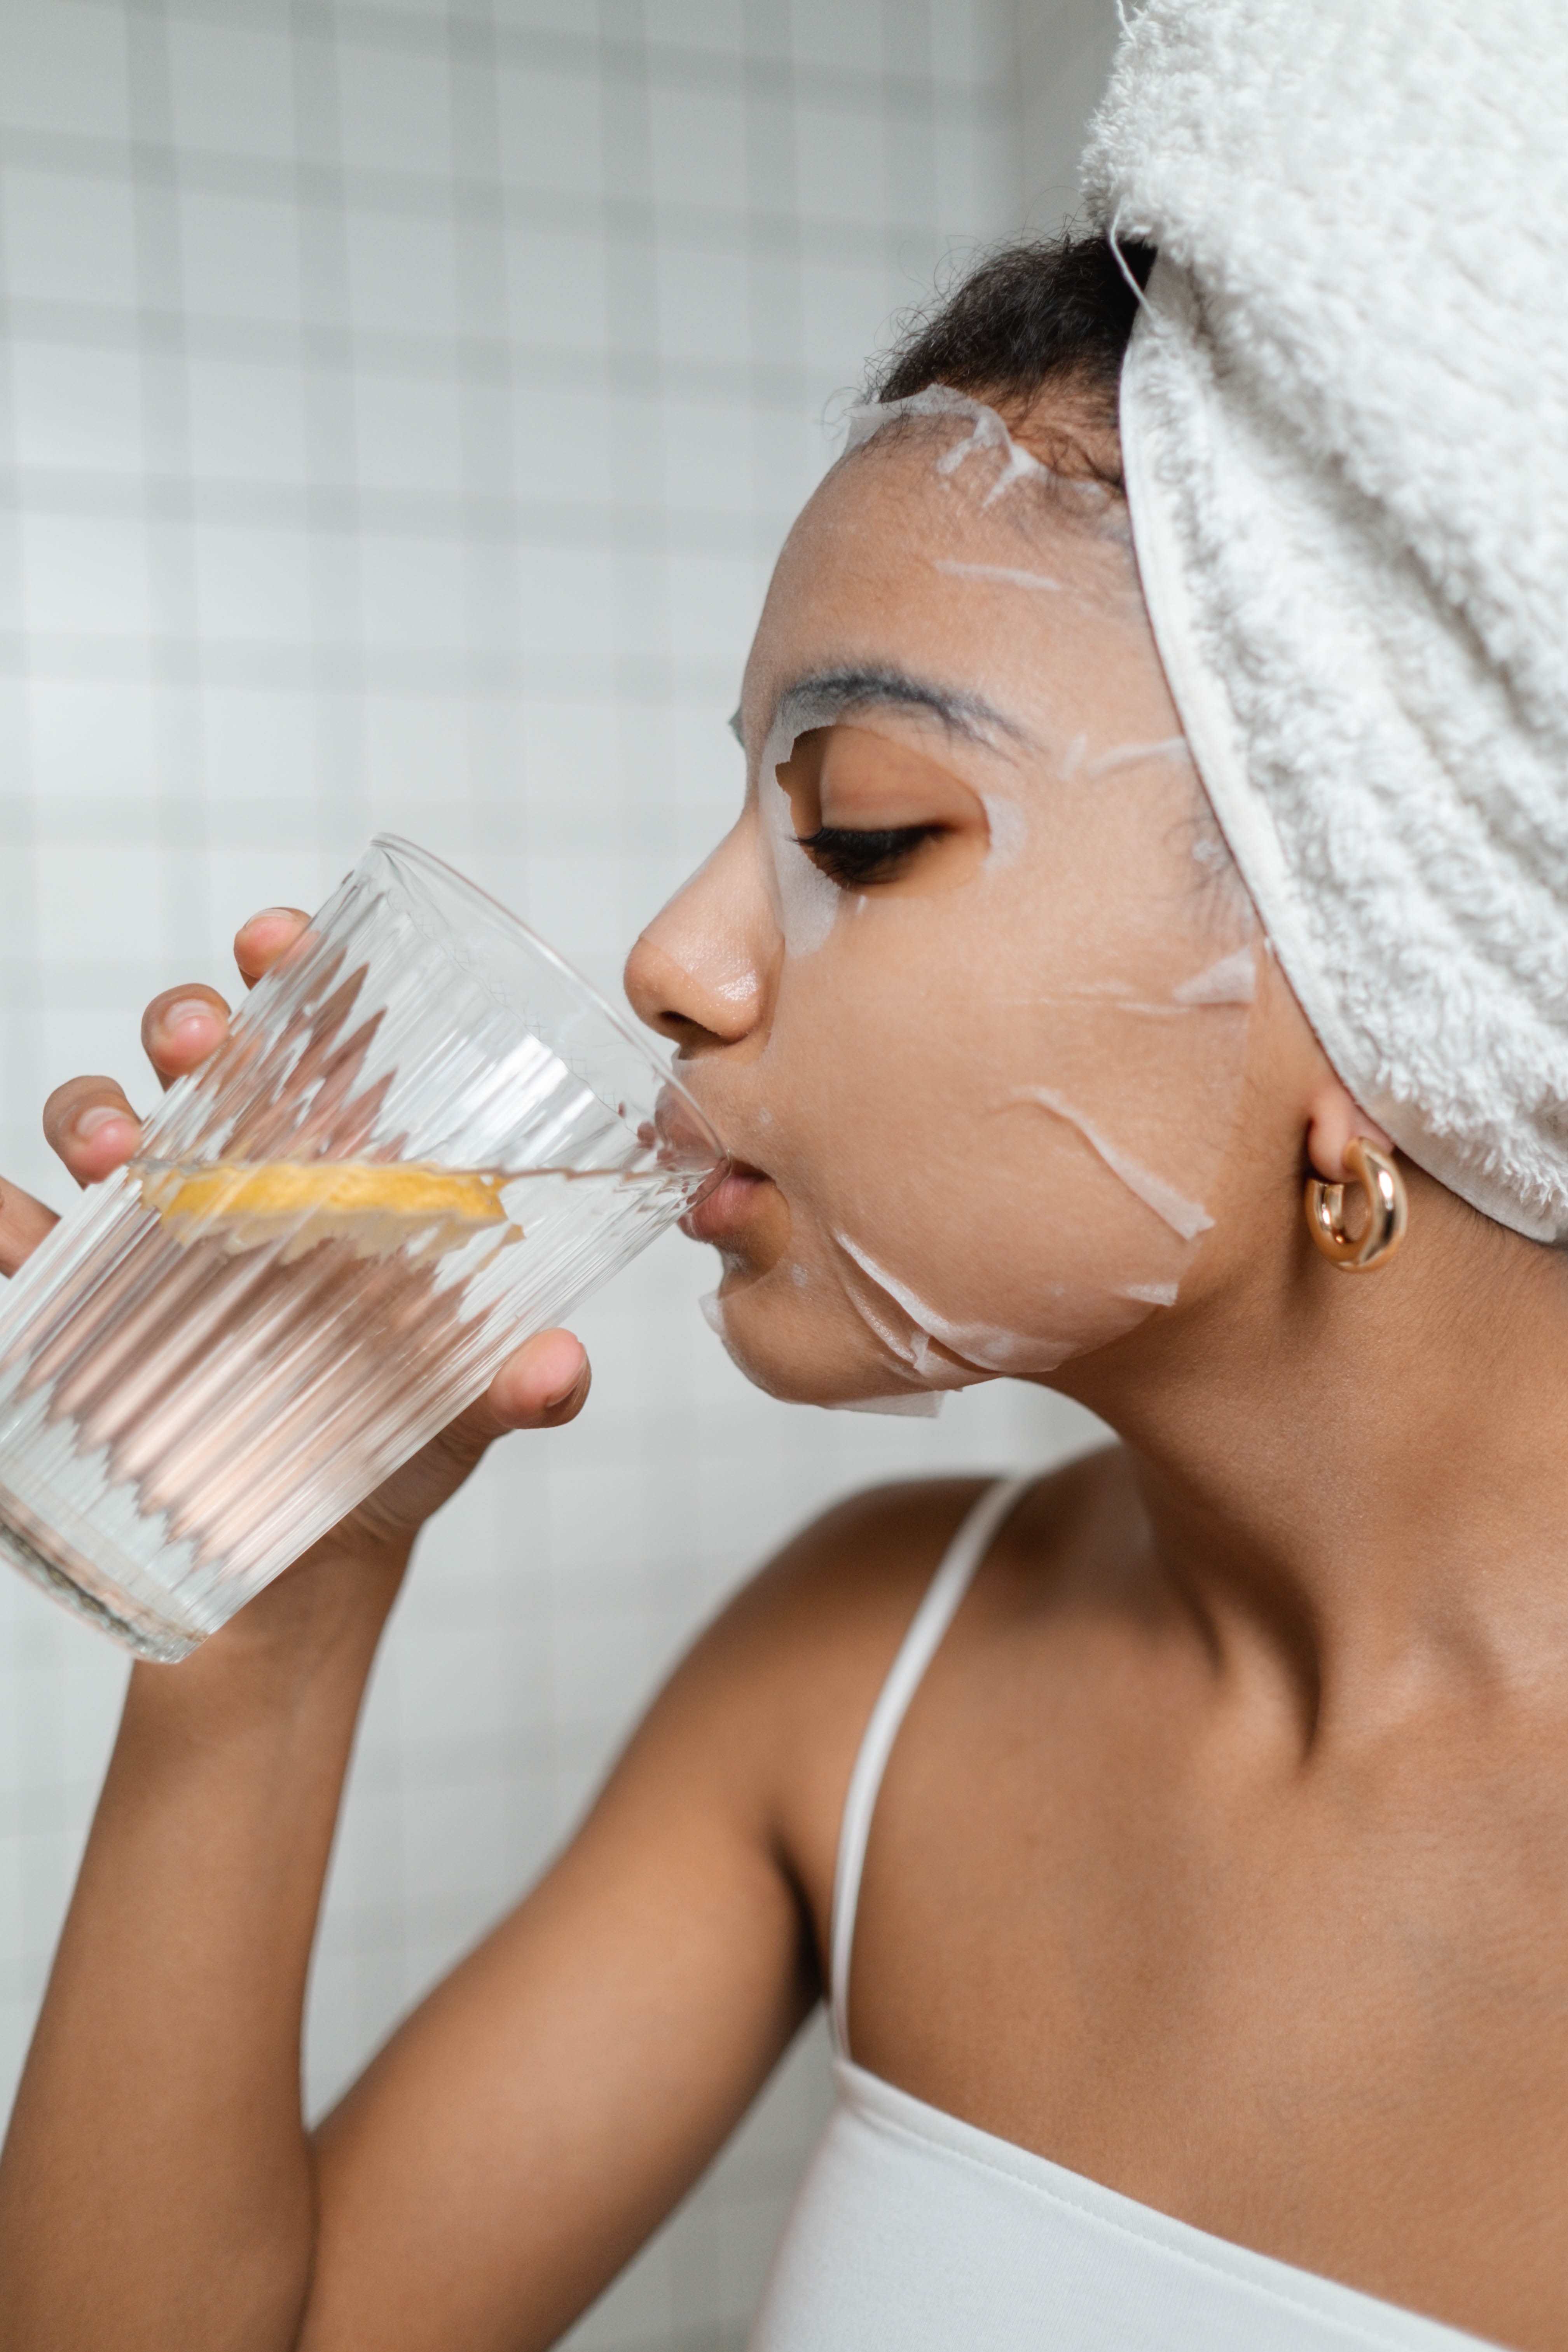 O suco de Aloe Vera pode ajudar a melhorar a pele? (Foto: Reprodução/Pexels)